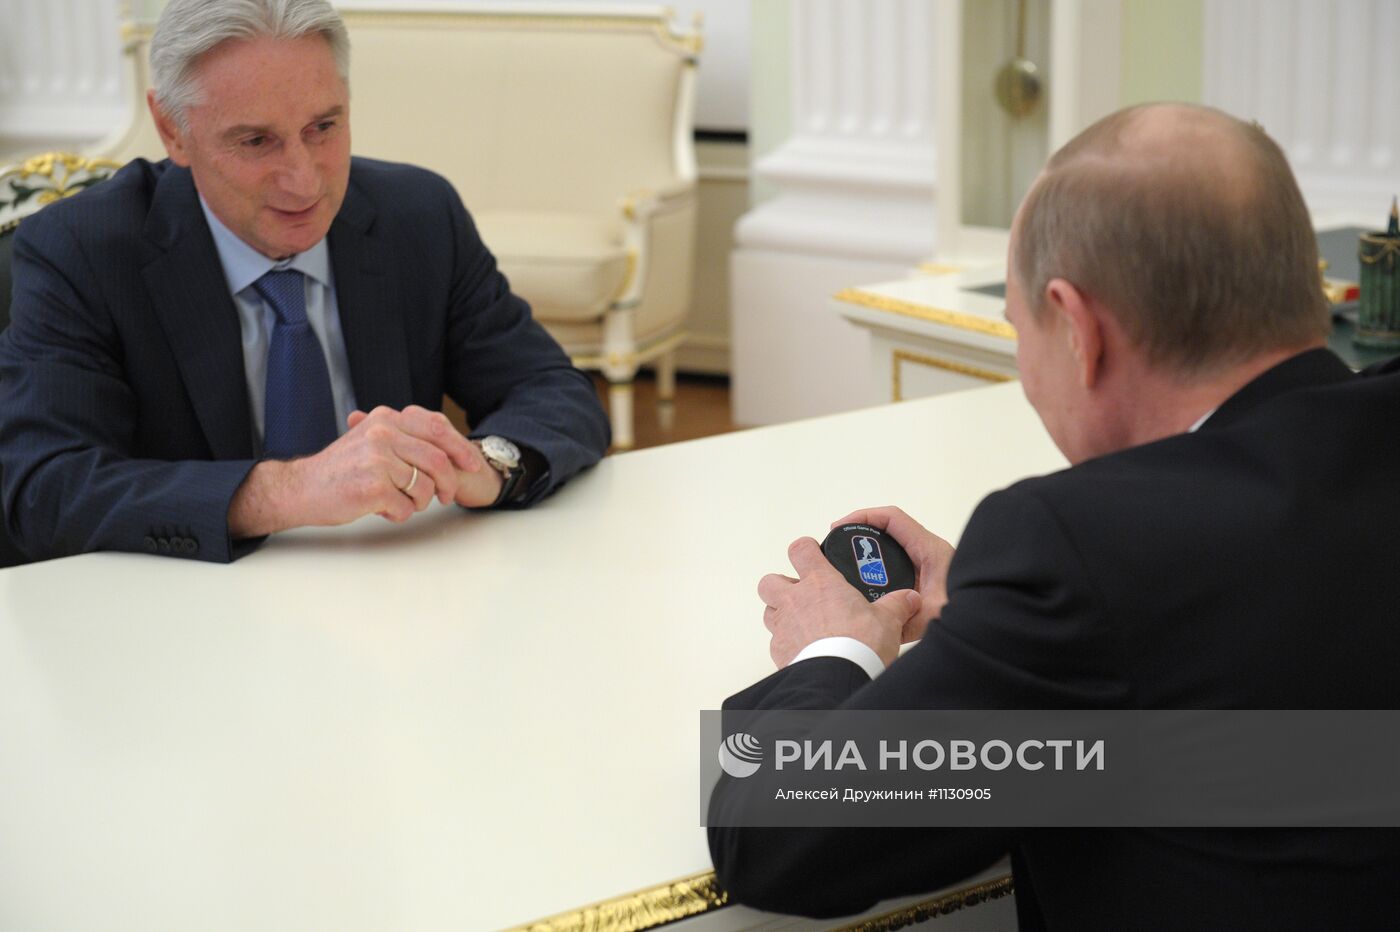 В.Путин встретился с P.Билялетдиновым